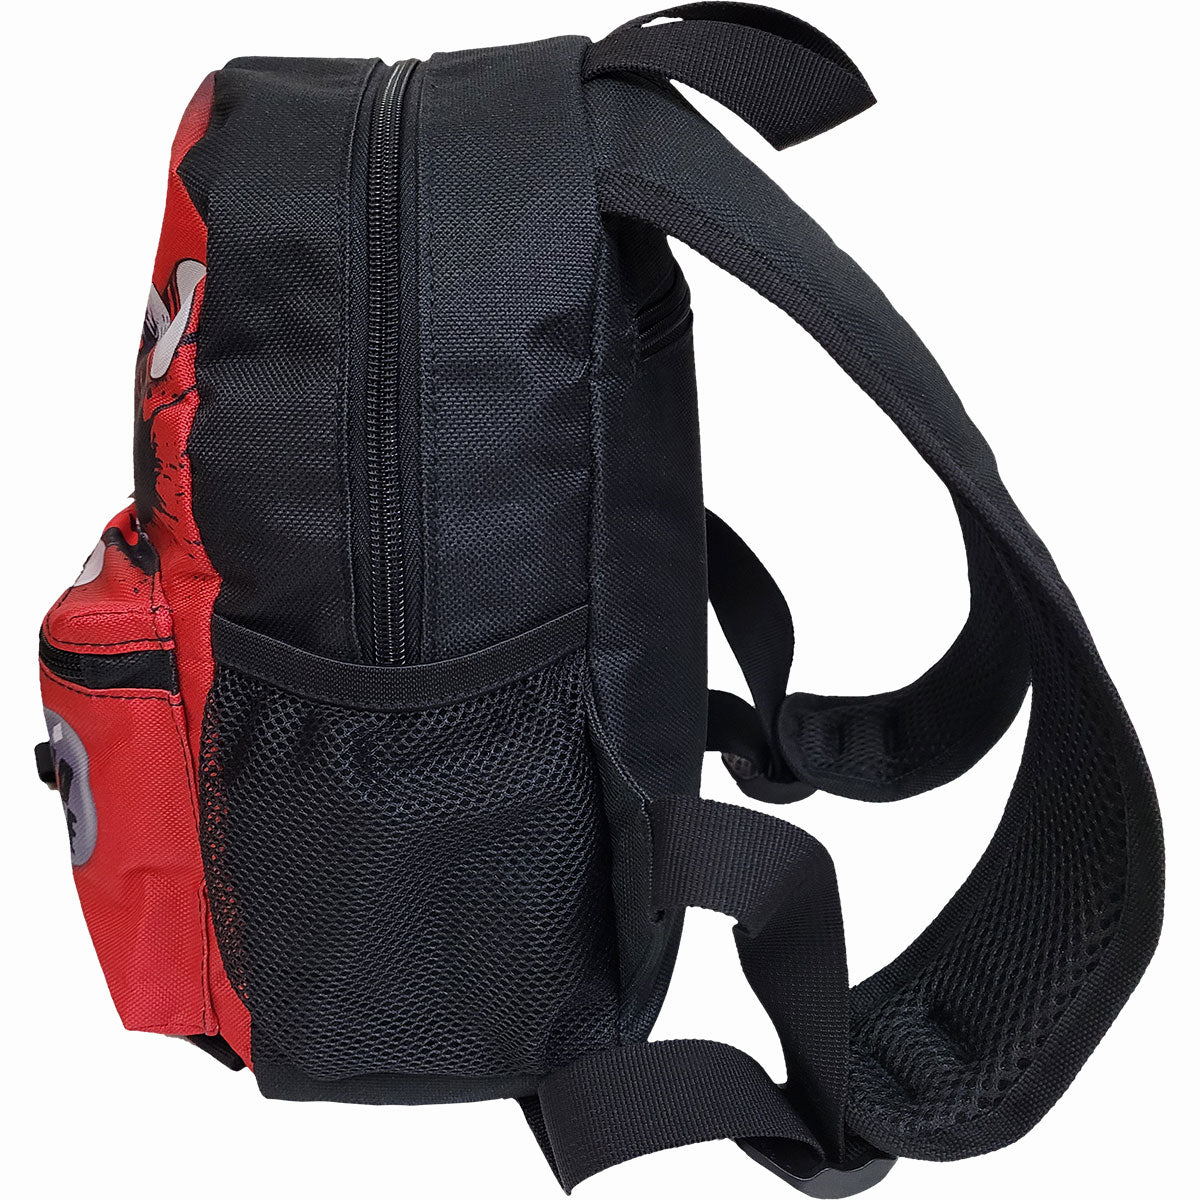 HARLEY QUINN - SPLATTER - Mini sac à dos avec pochette pour téléphone portable